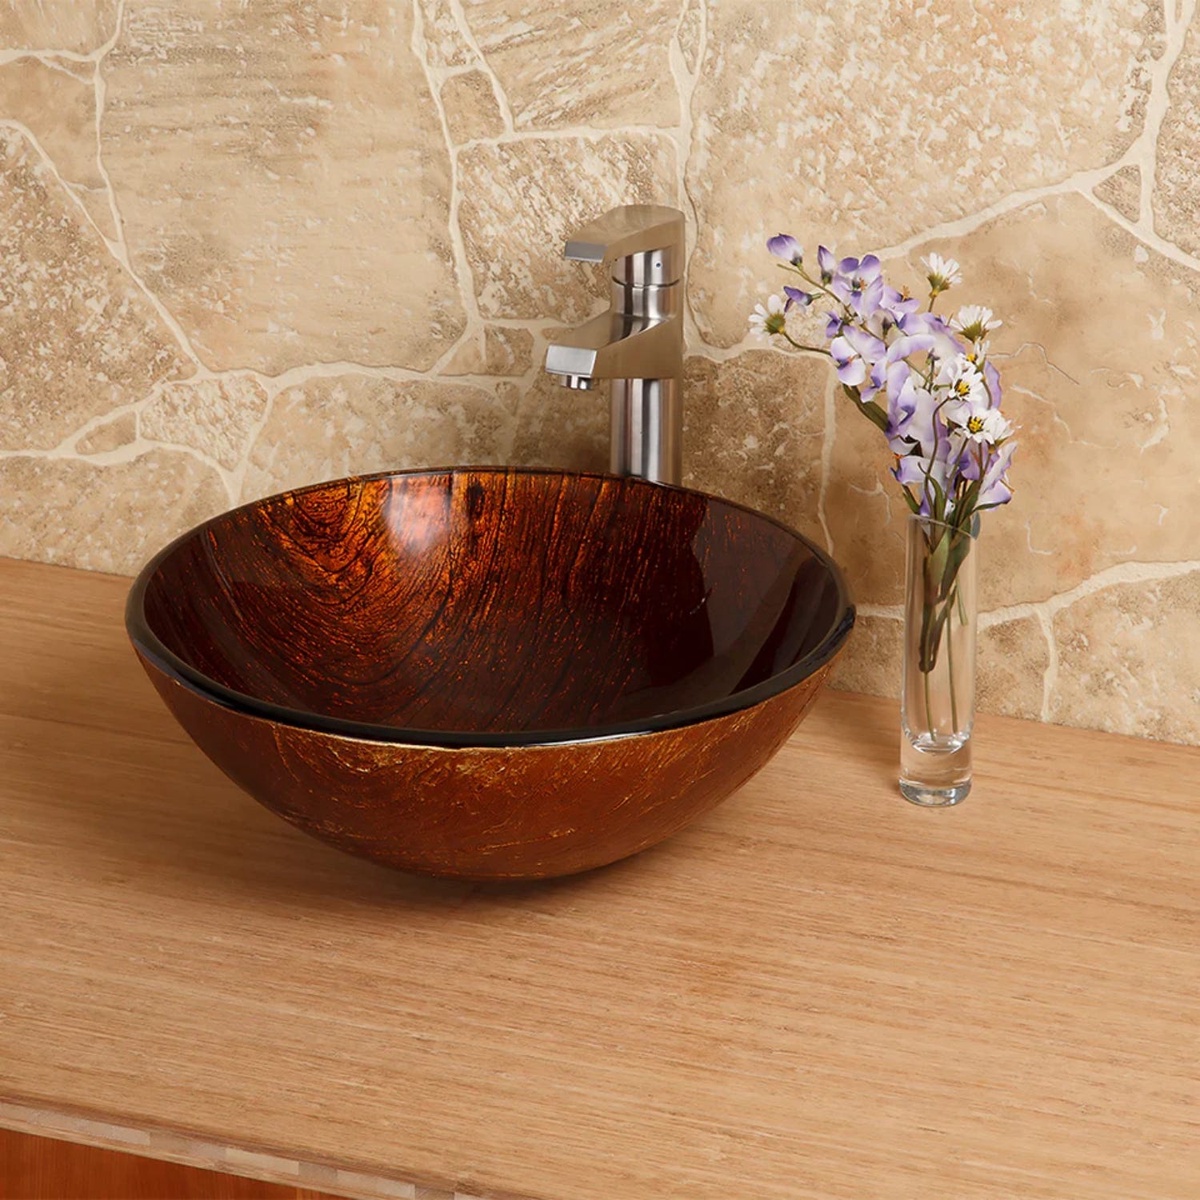 Copper Kitchen Sinks: The Secret Ingredient for a Stunning Kitchen